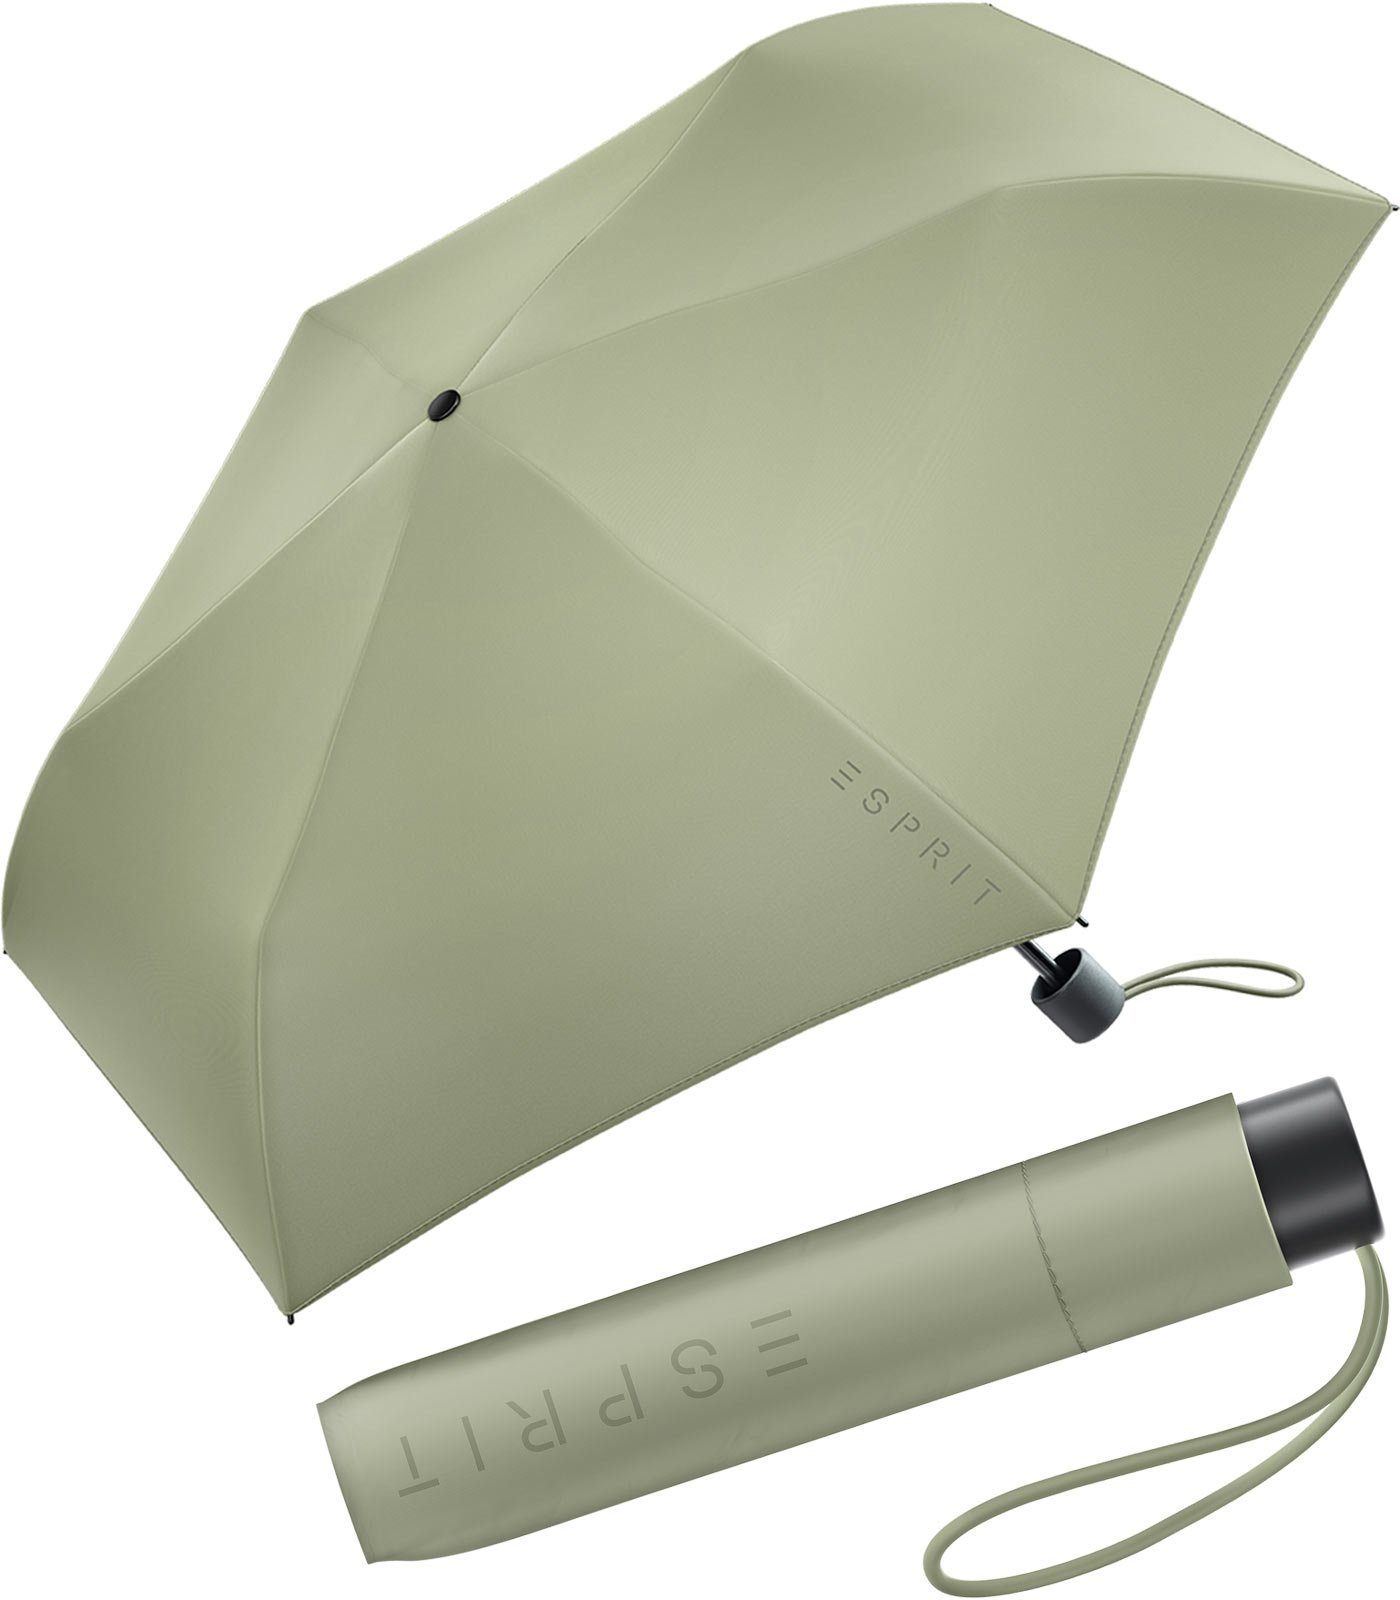 Esprit Taschenregenschirm Mini Regenschirm Damen Slimline FJ 2022, sehr leicht, in den neuen Trendfarben olive